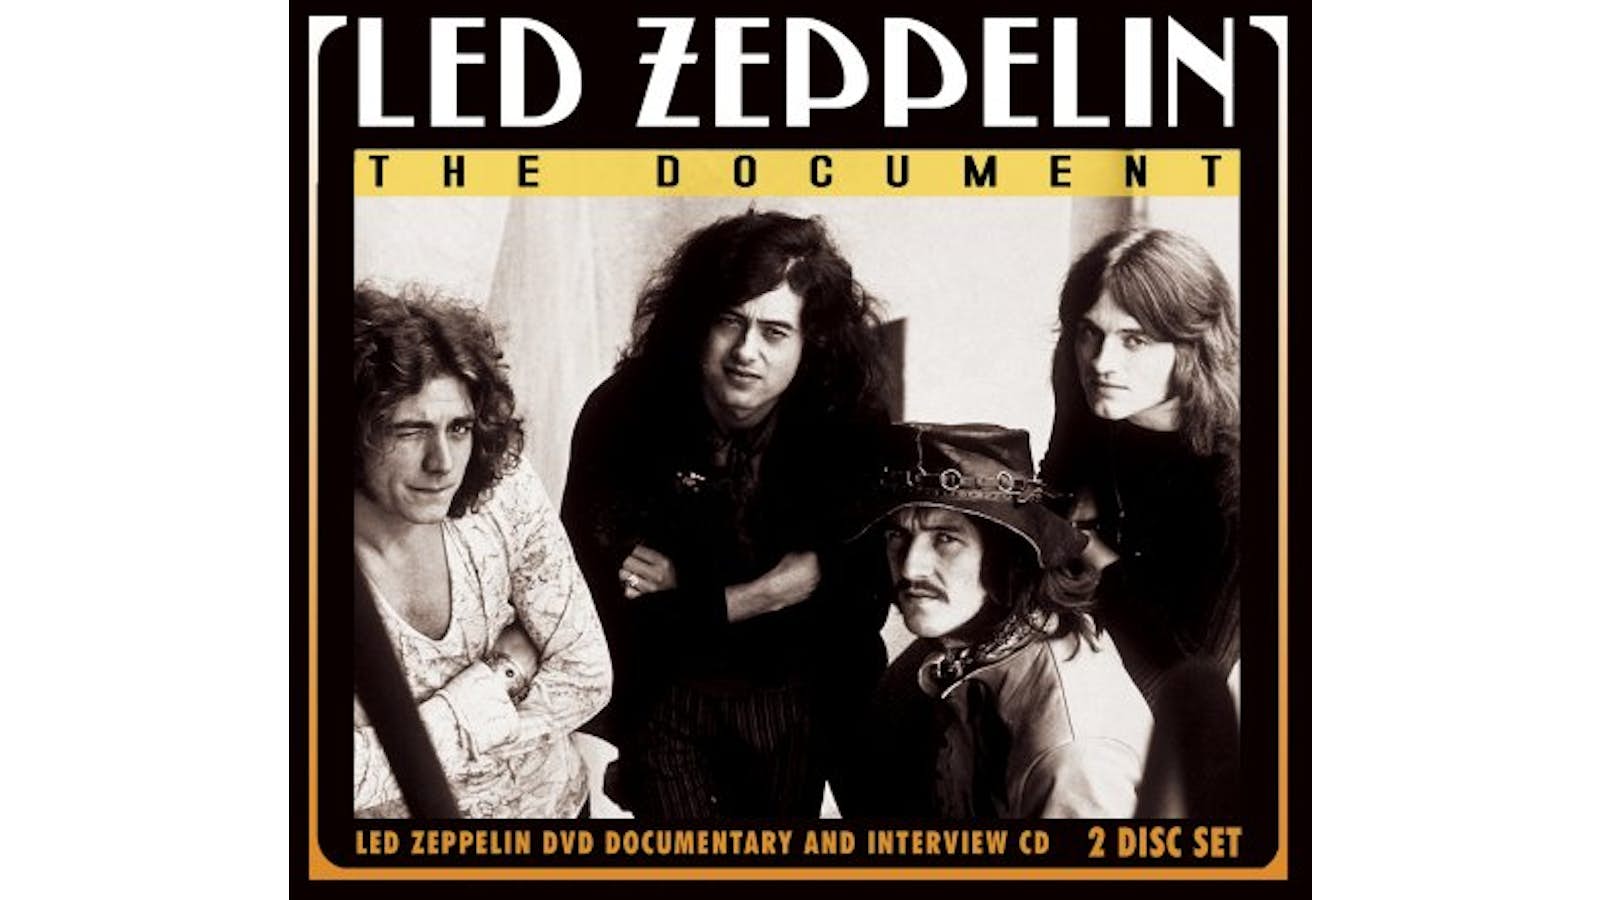 Led Zeppelin. The Document (CD + DVD) - Led Zeppelin - CD album